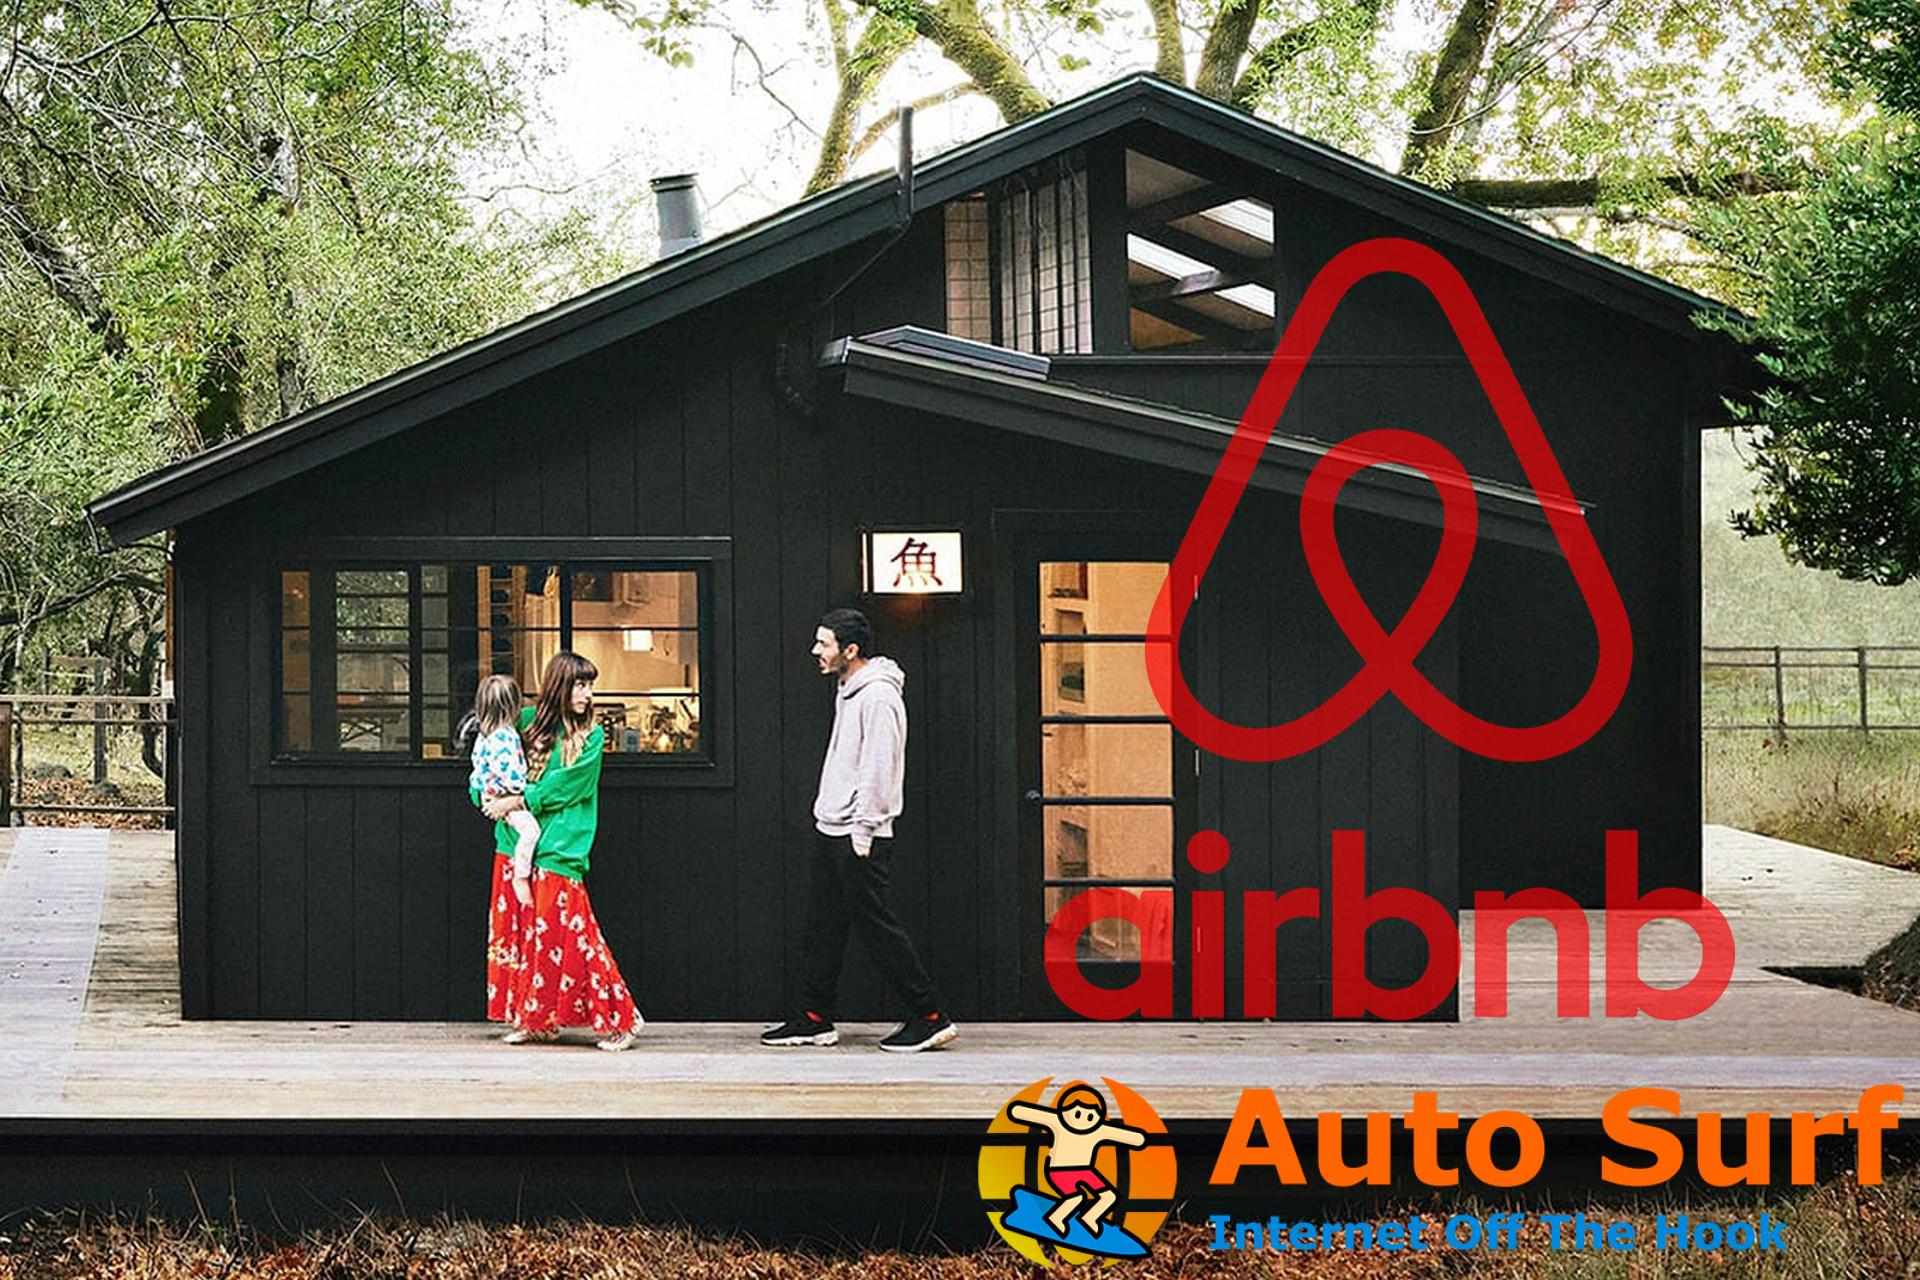 No tienes permiso para acceder a este recurso de Airbnb